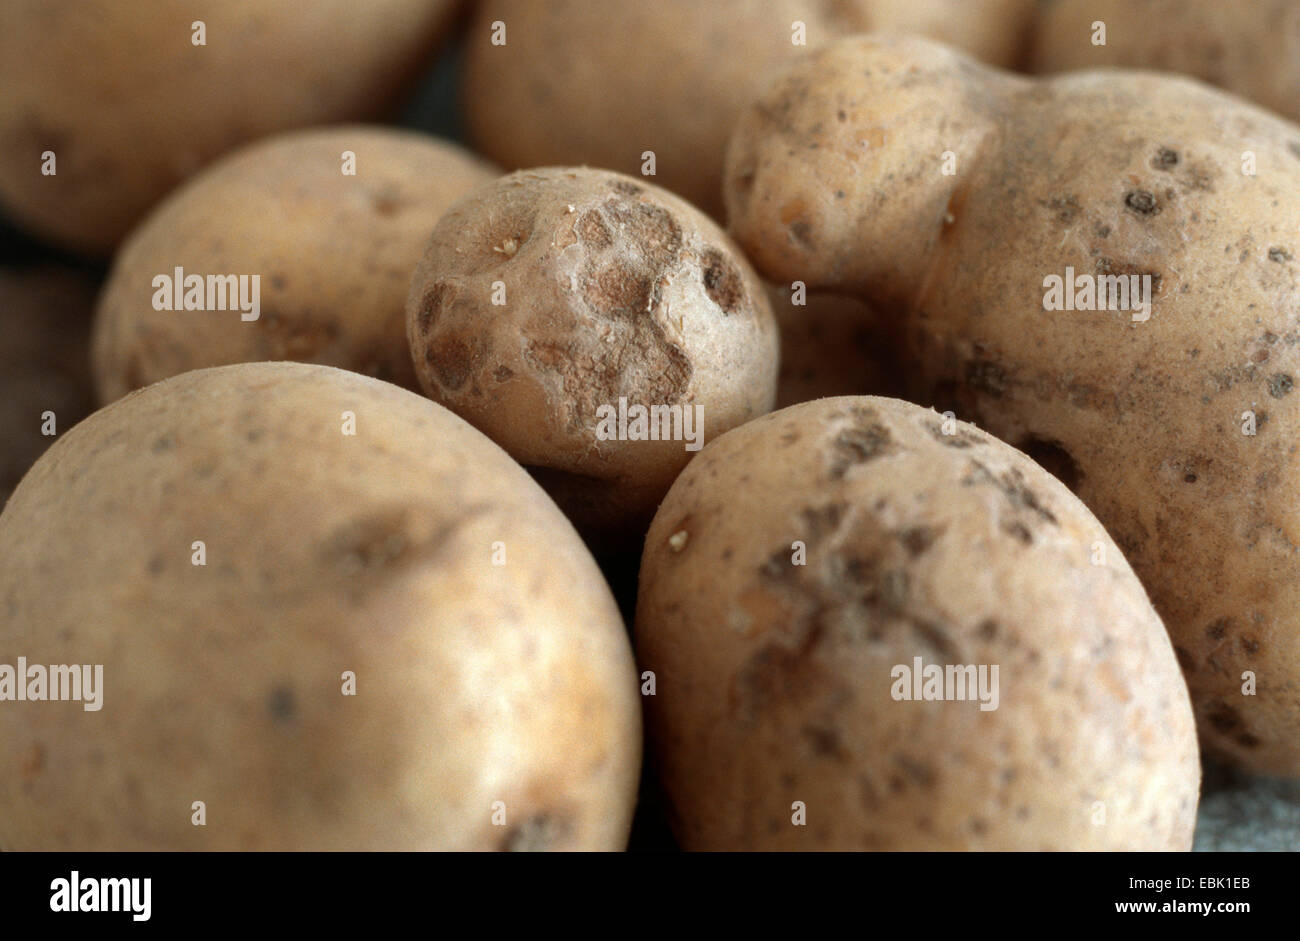 potato (Solanum tuberosum), with Colletotrichum Stock Photo